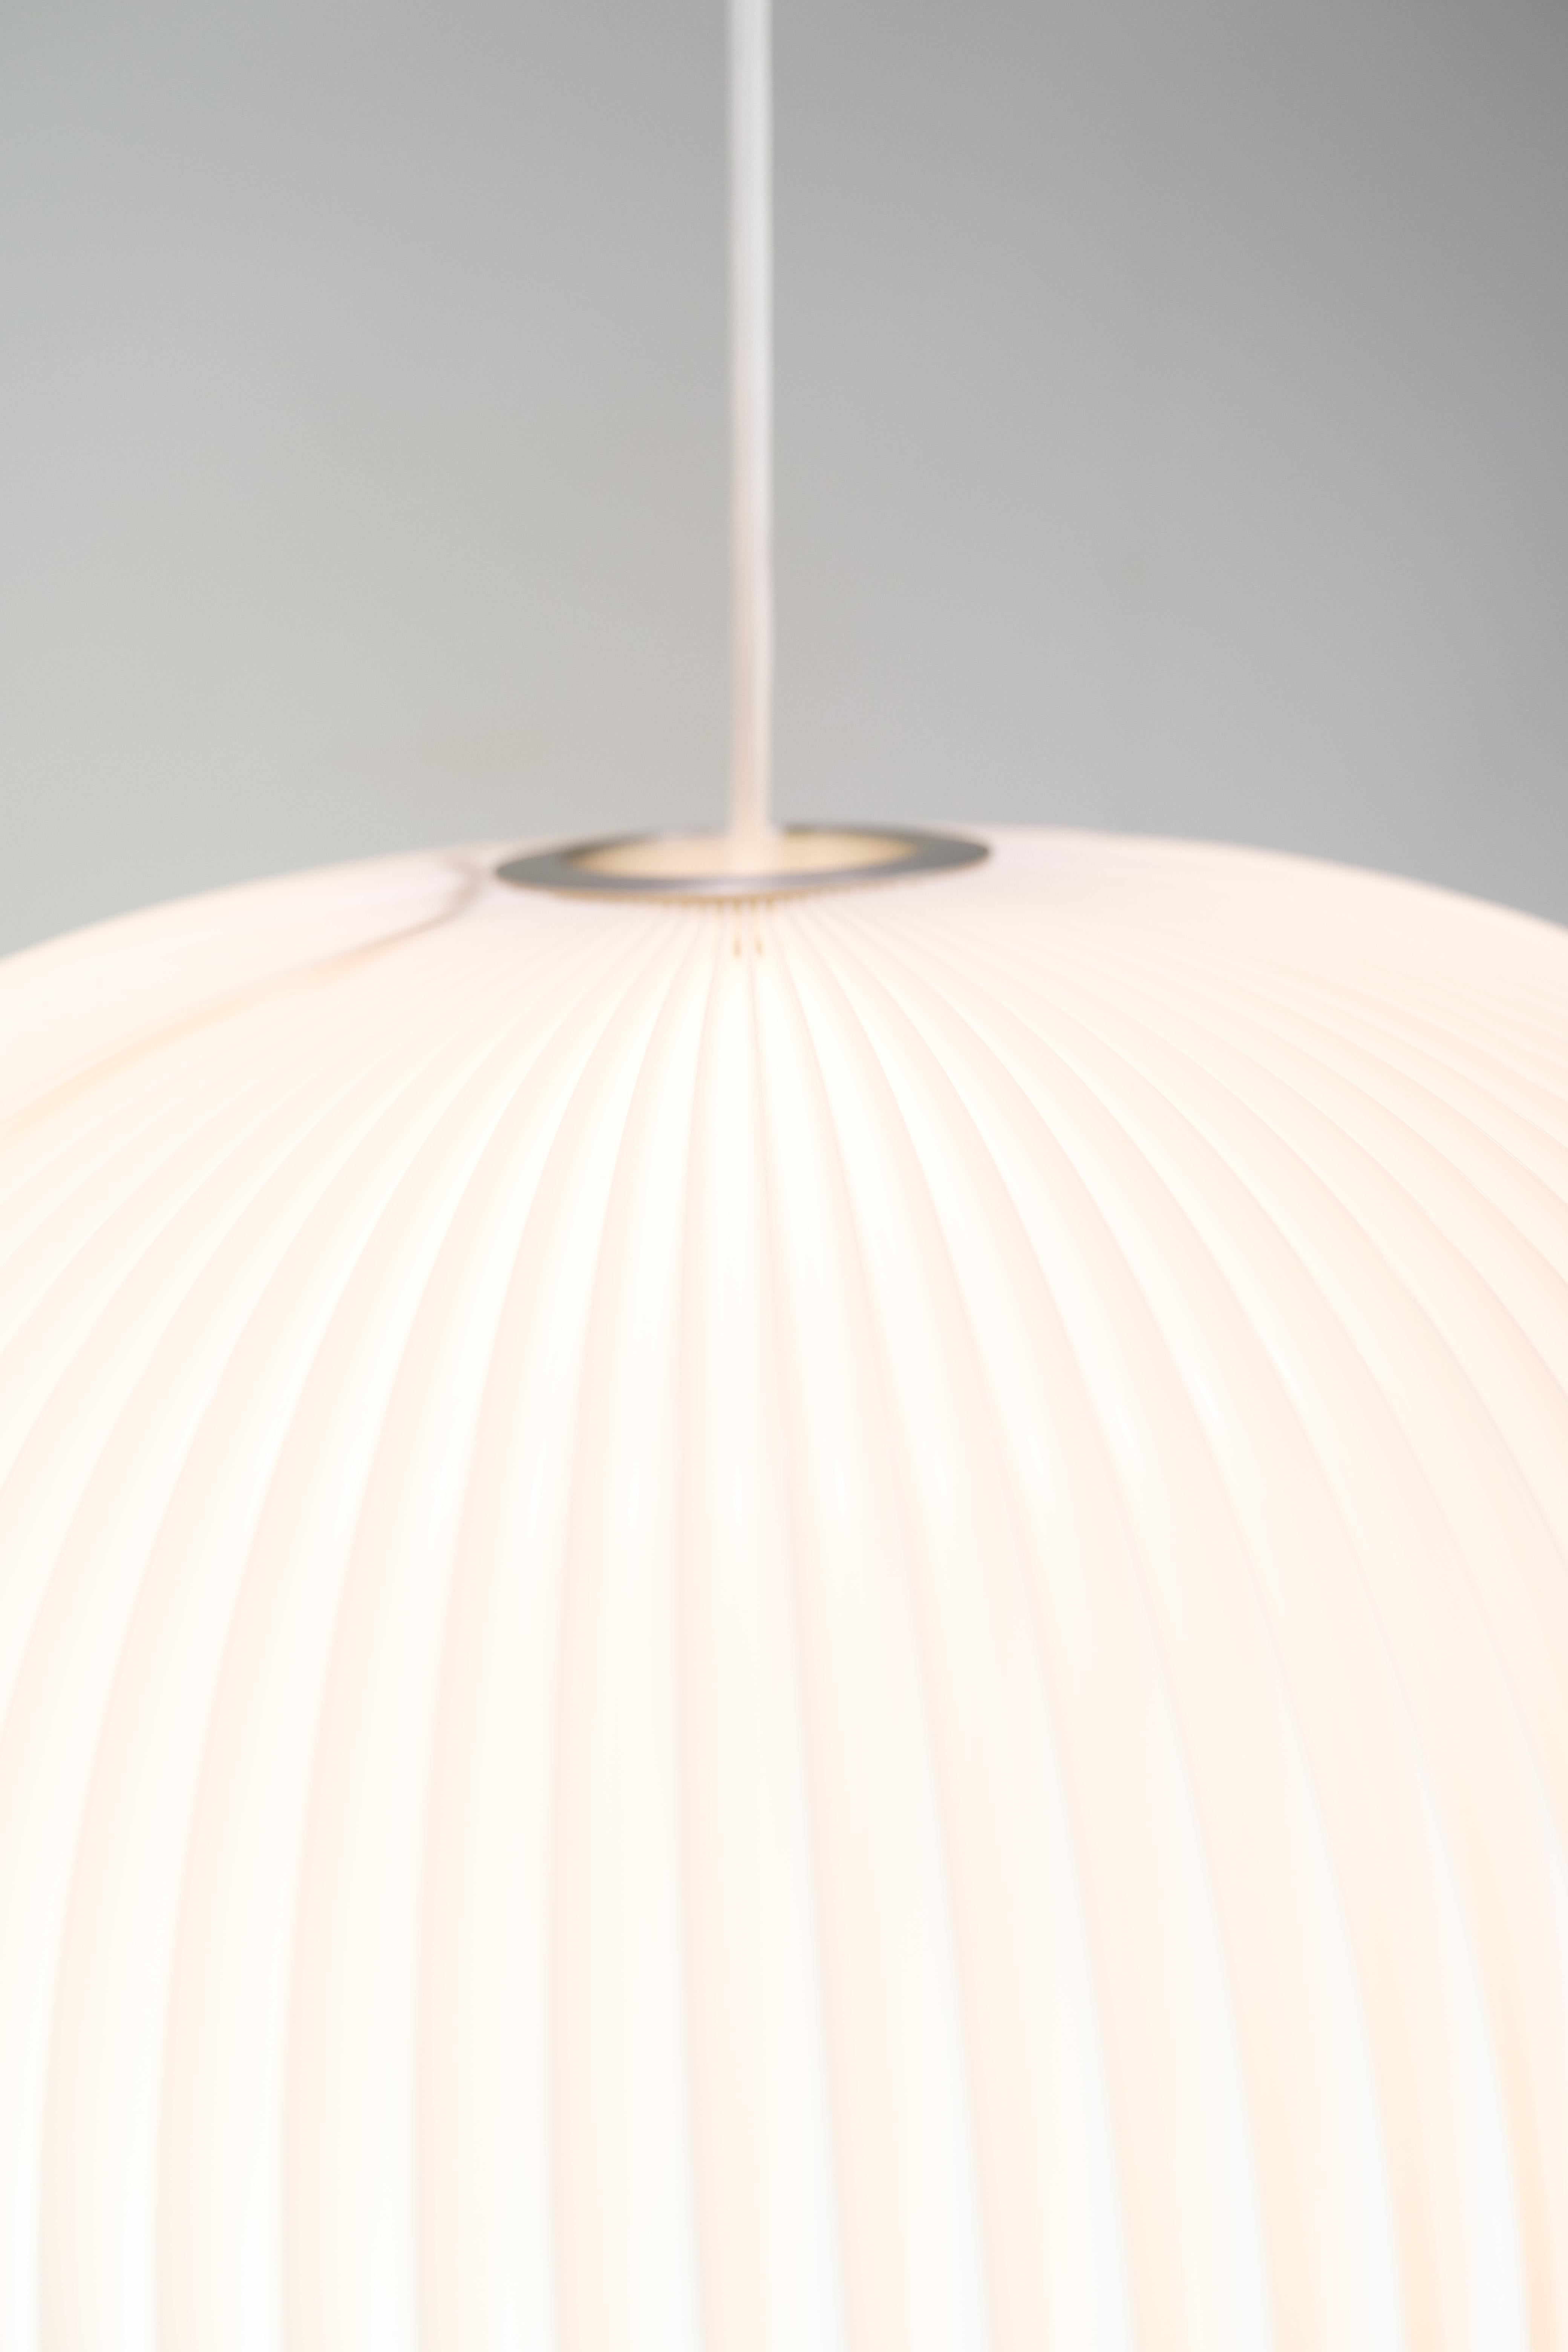 Scandinavian Modern Ceiling Lamp Part Of 132 Lamella Series By Hallgeir Homstvedt & Jonah Takagi For Sale